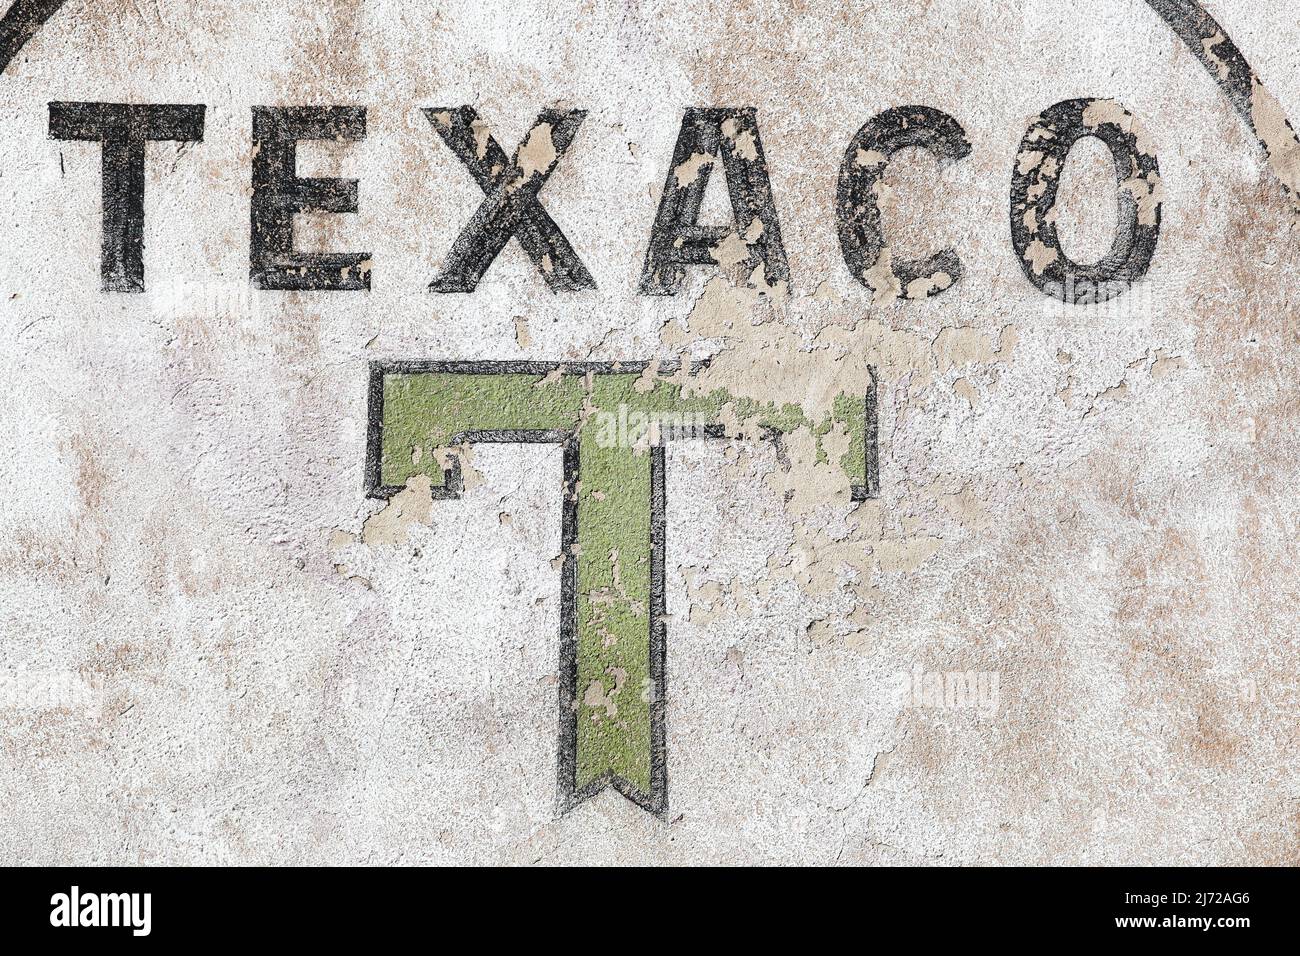 Beaujeu, France - July 8, 2020: Retro Texaco logo on a wall. Texaco is an American oil subsidiary of Chevron Corporation Stock Photo